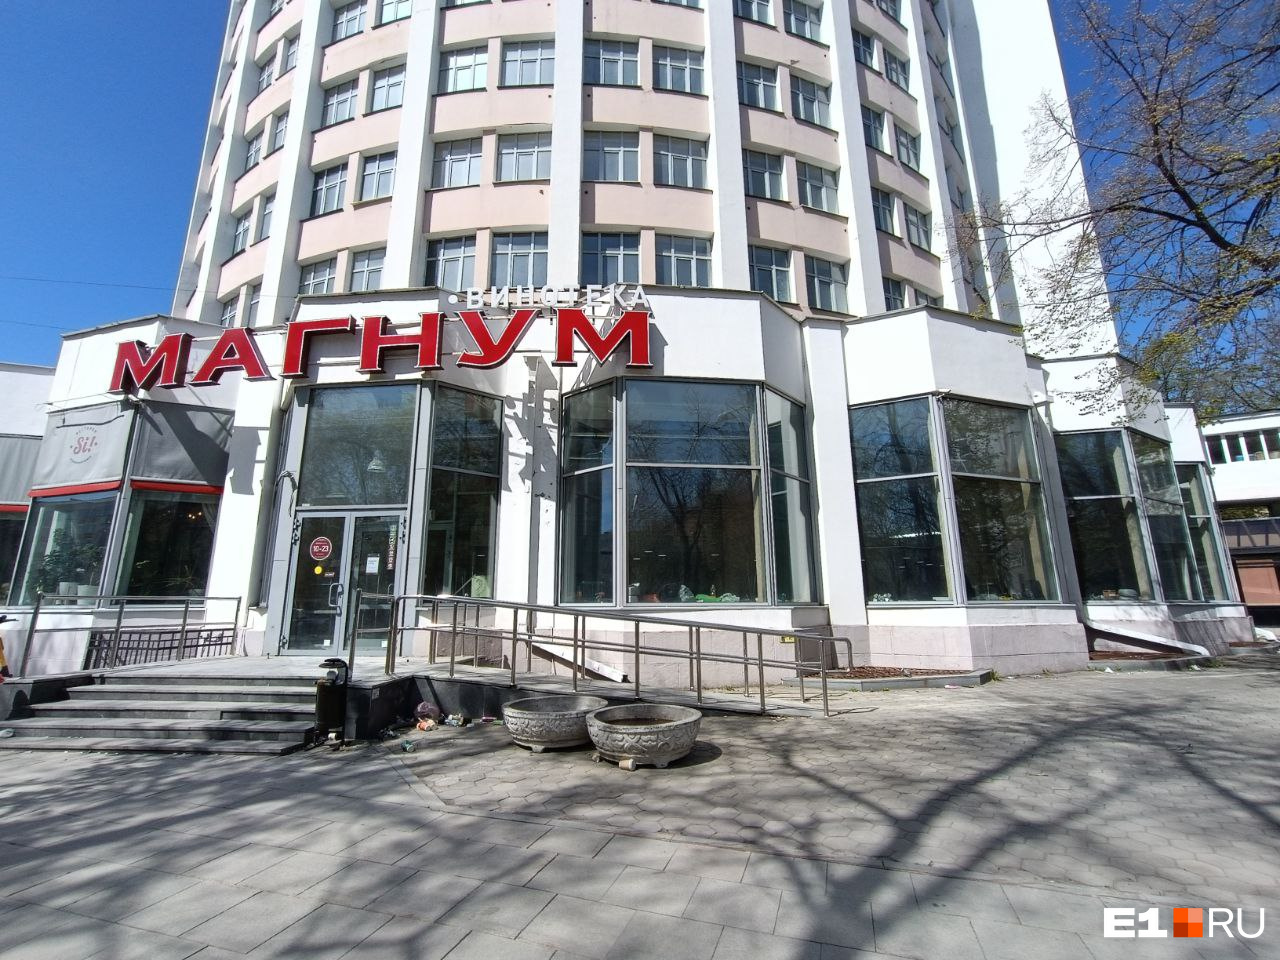 В центре Екатеринбурга закрылся популярный алкомаркет. Объясняем почему